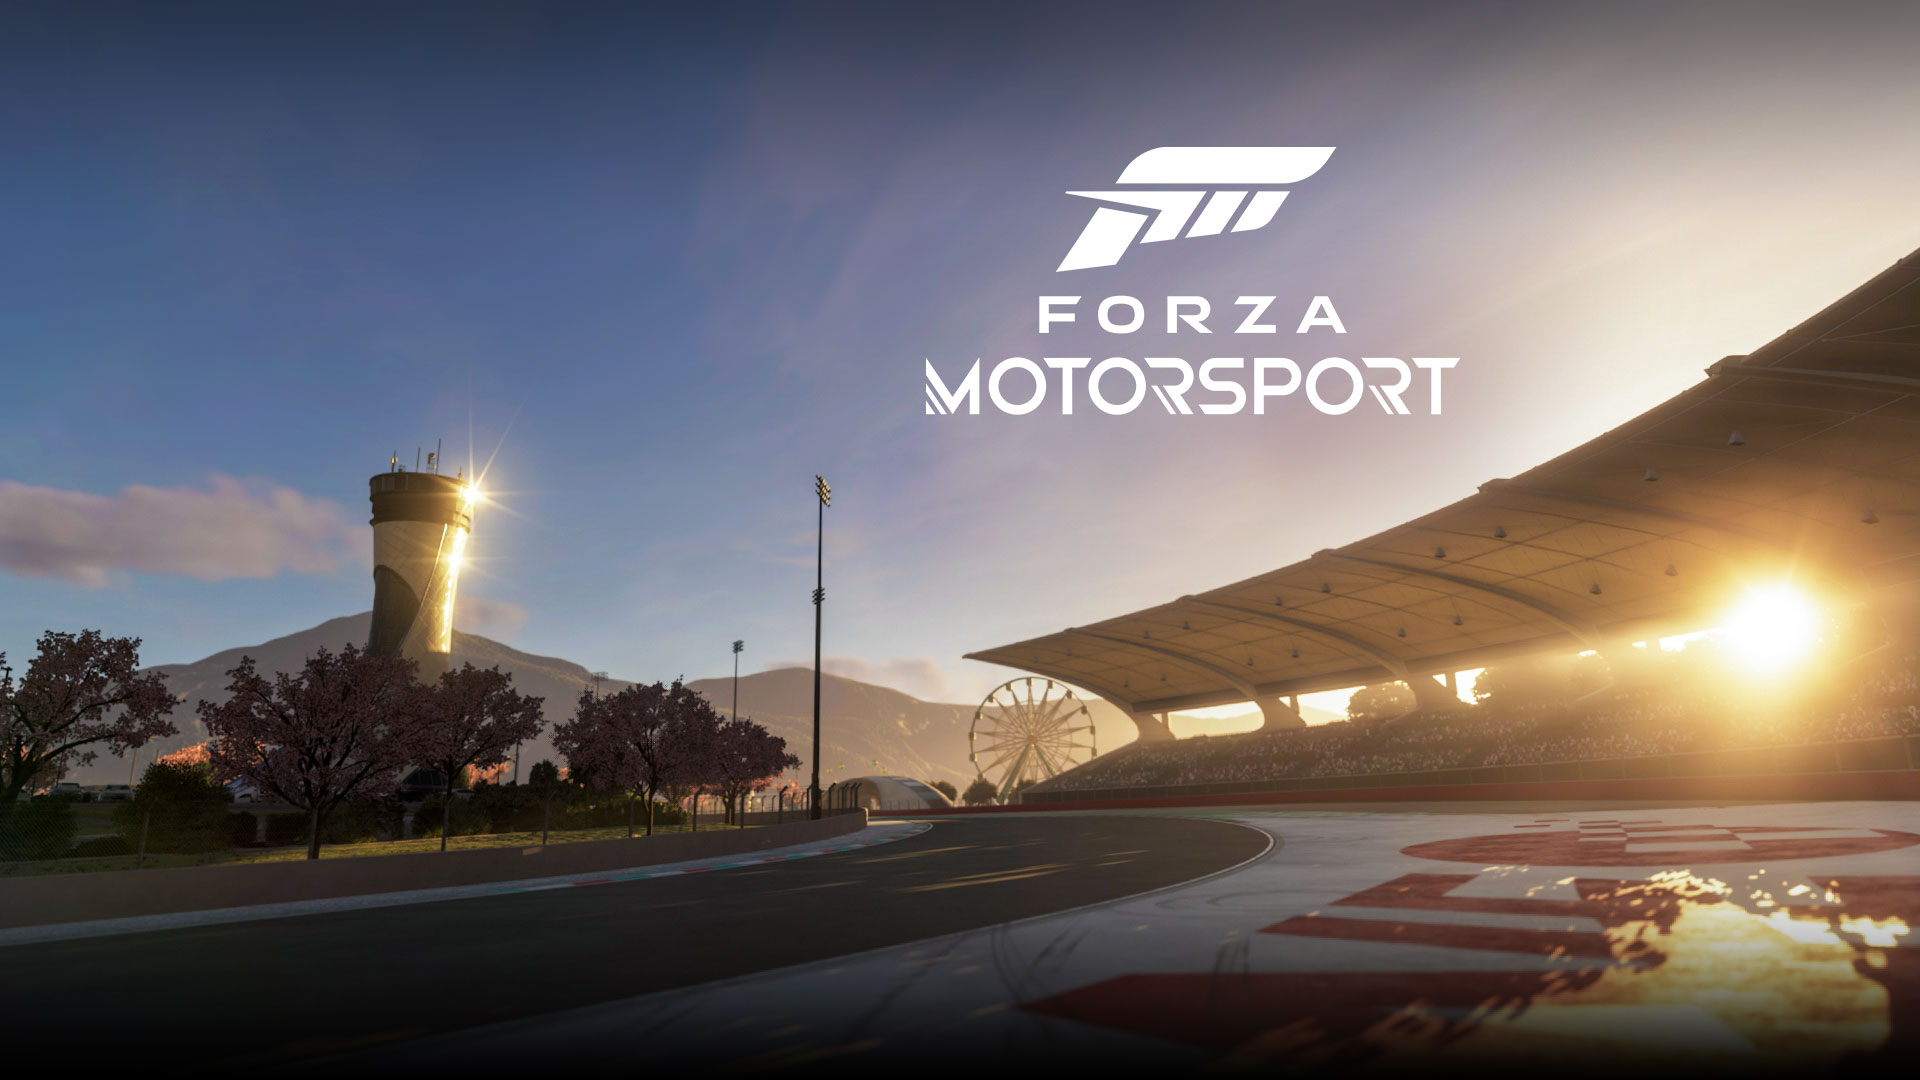 Forza Motorsport, Eine untergehende Sonne scheint über einer Rennstrecke.